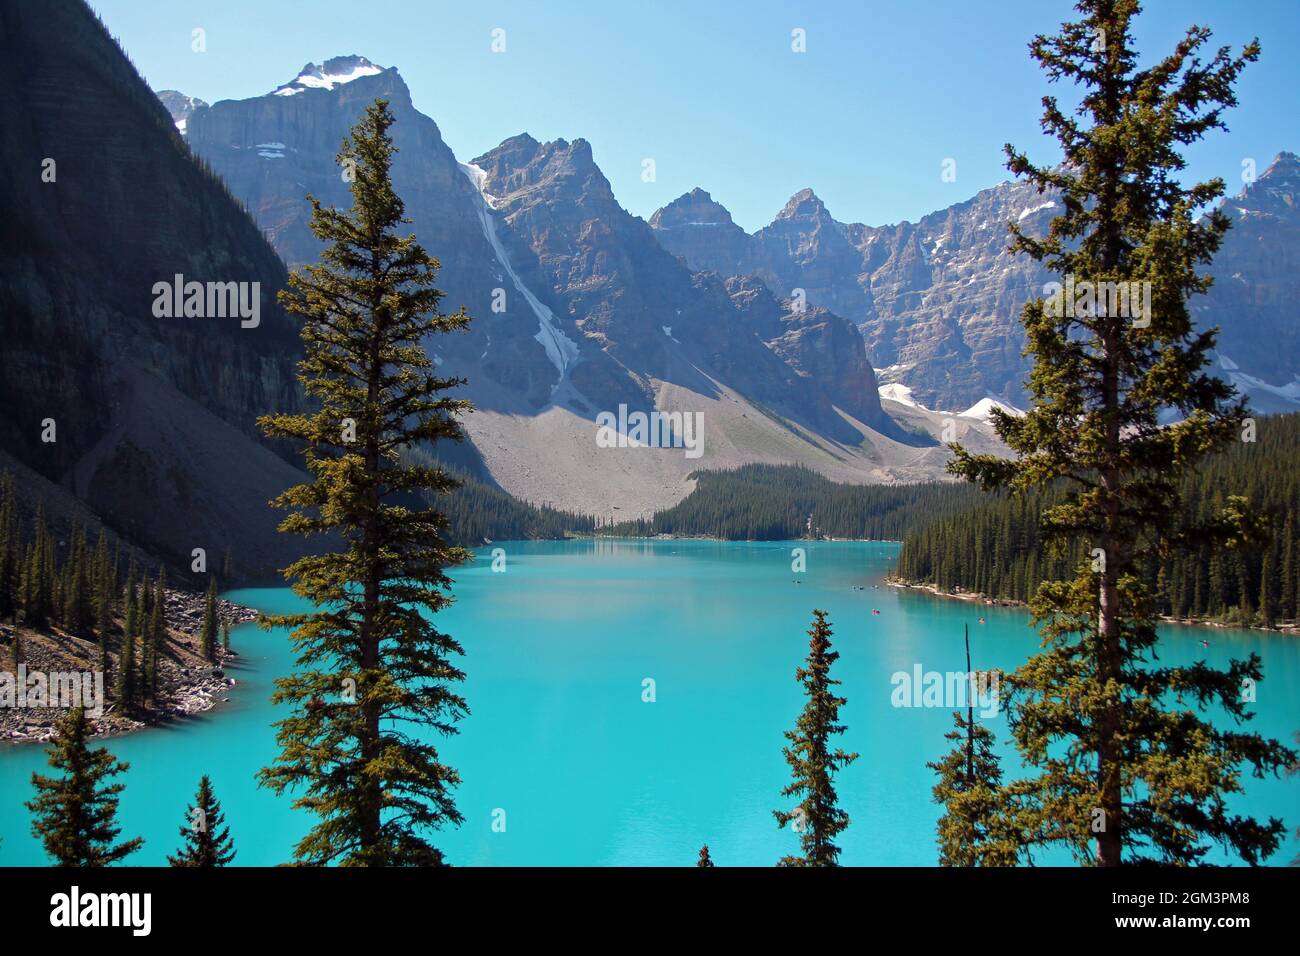 Les eaux turquoise du lac Moraine dans le parc national Banff au Canada Banque D'Images